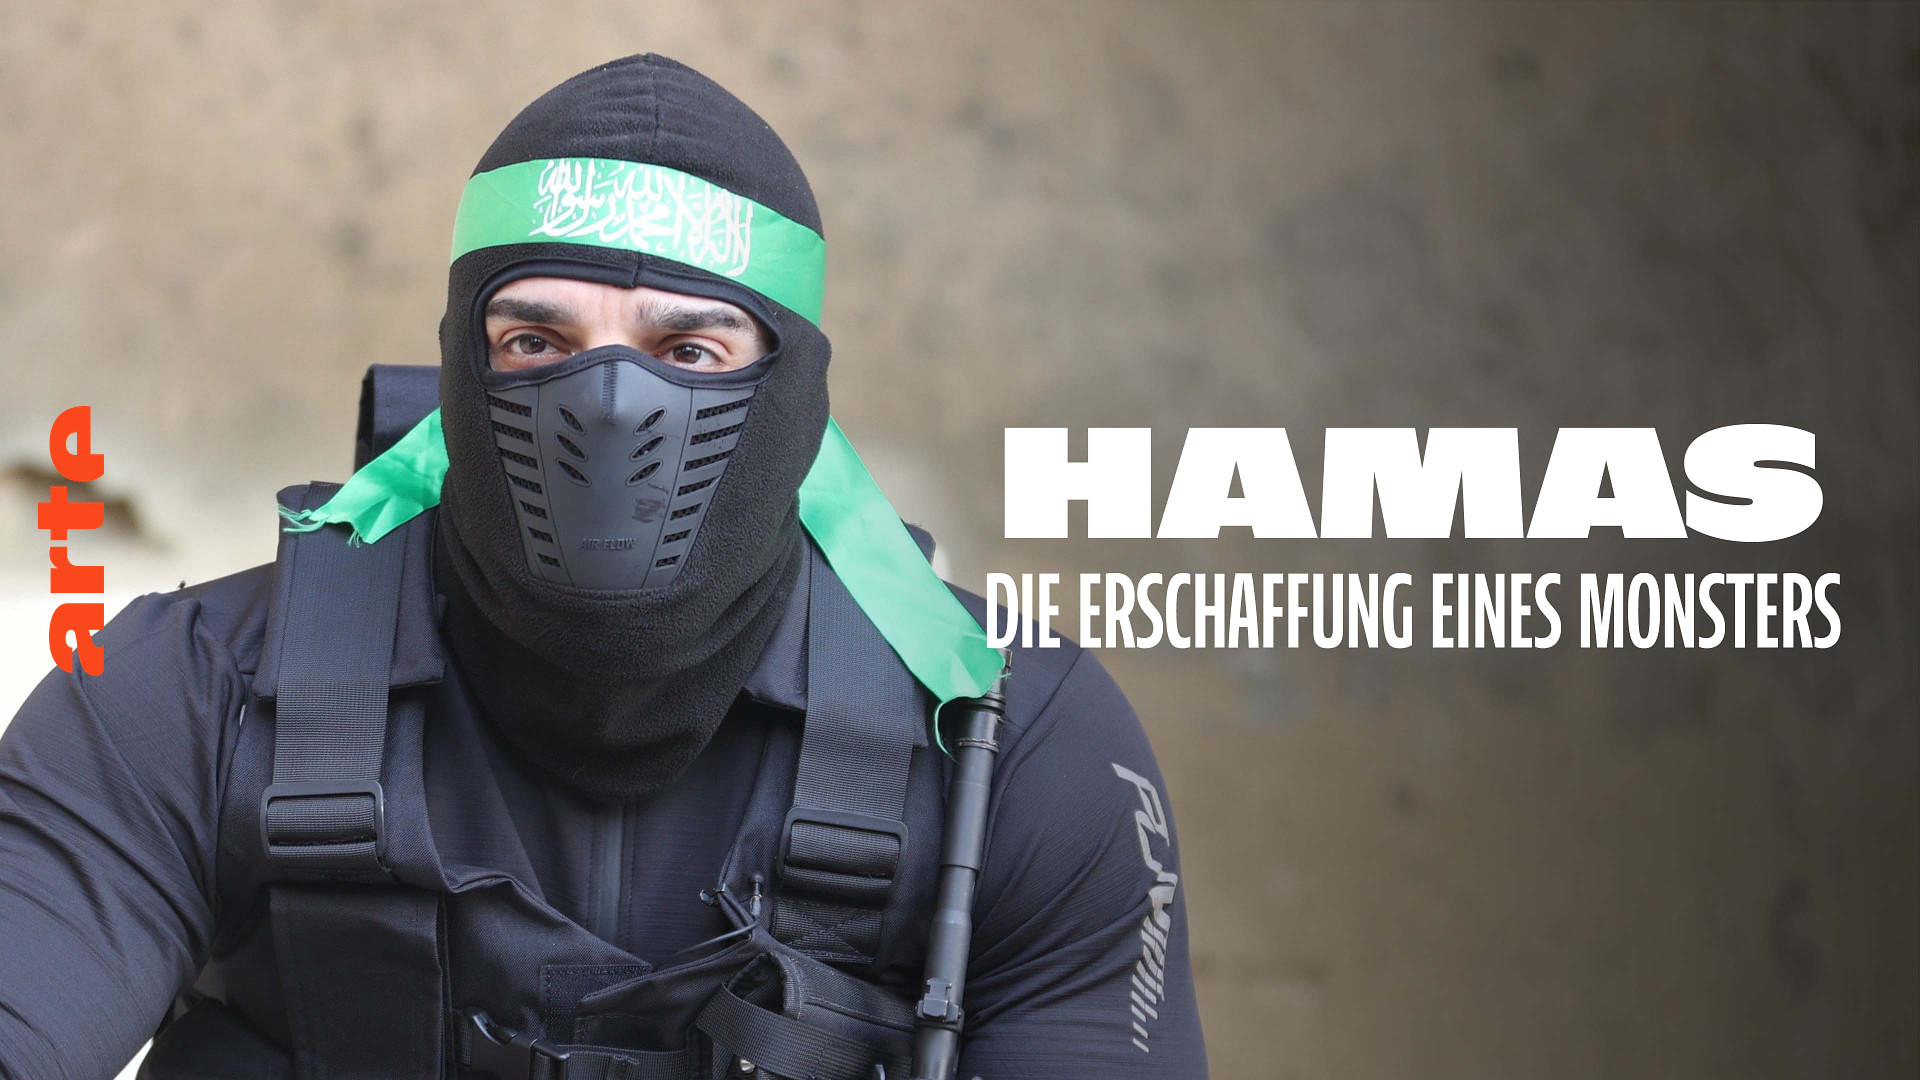 Hamas: Die Erschaffung eines Monsters